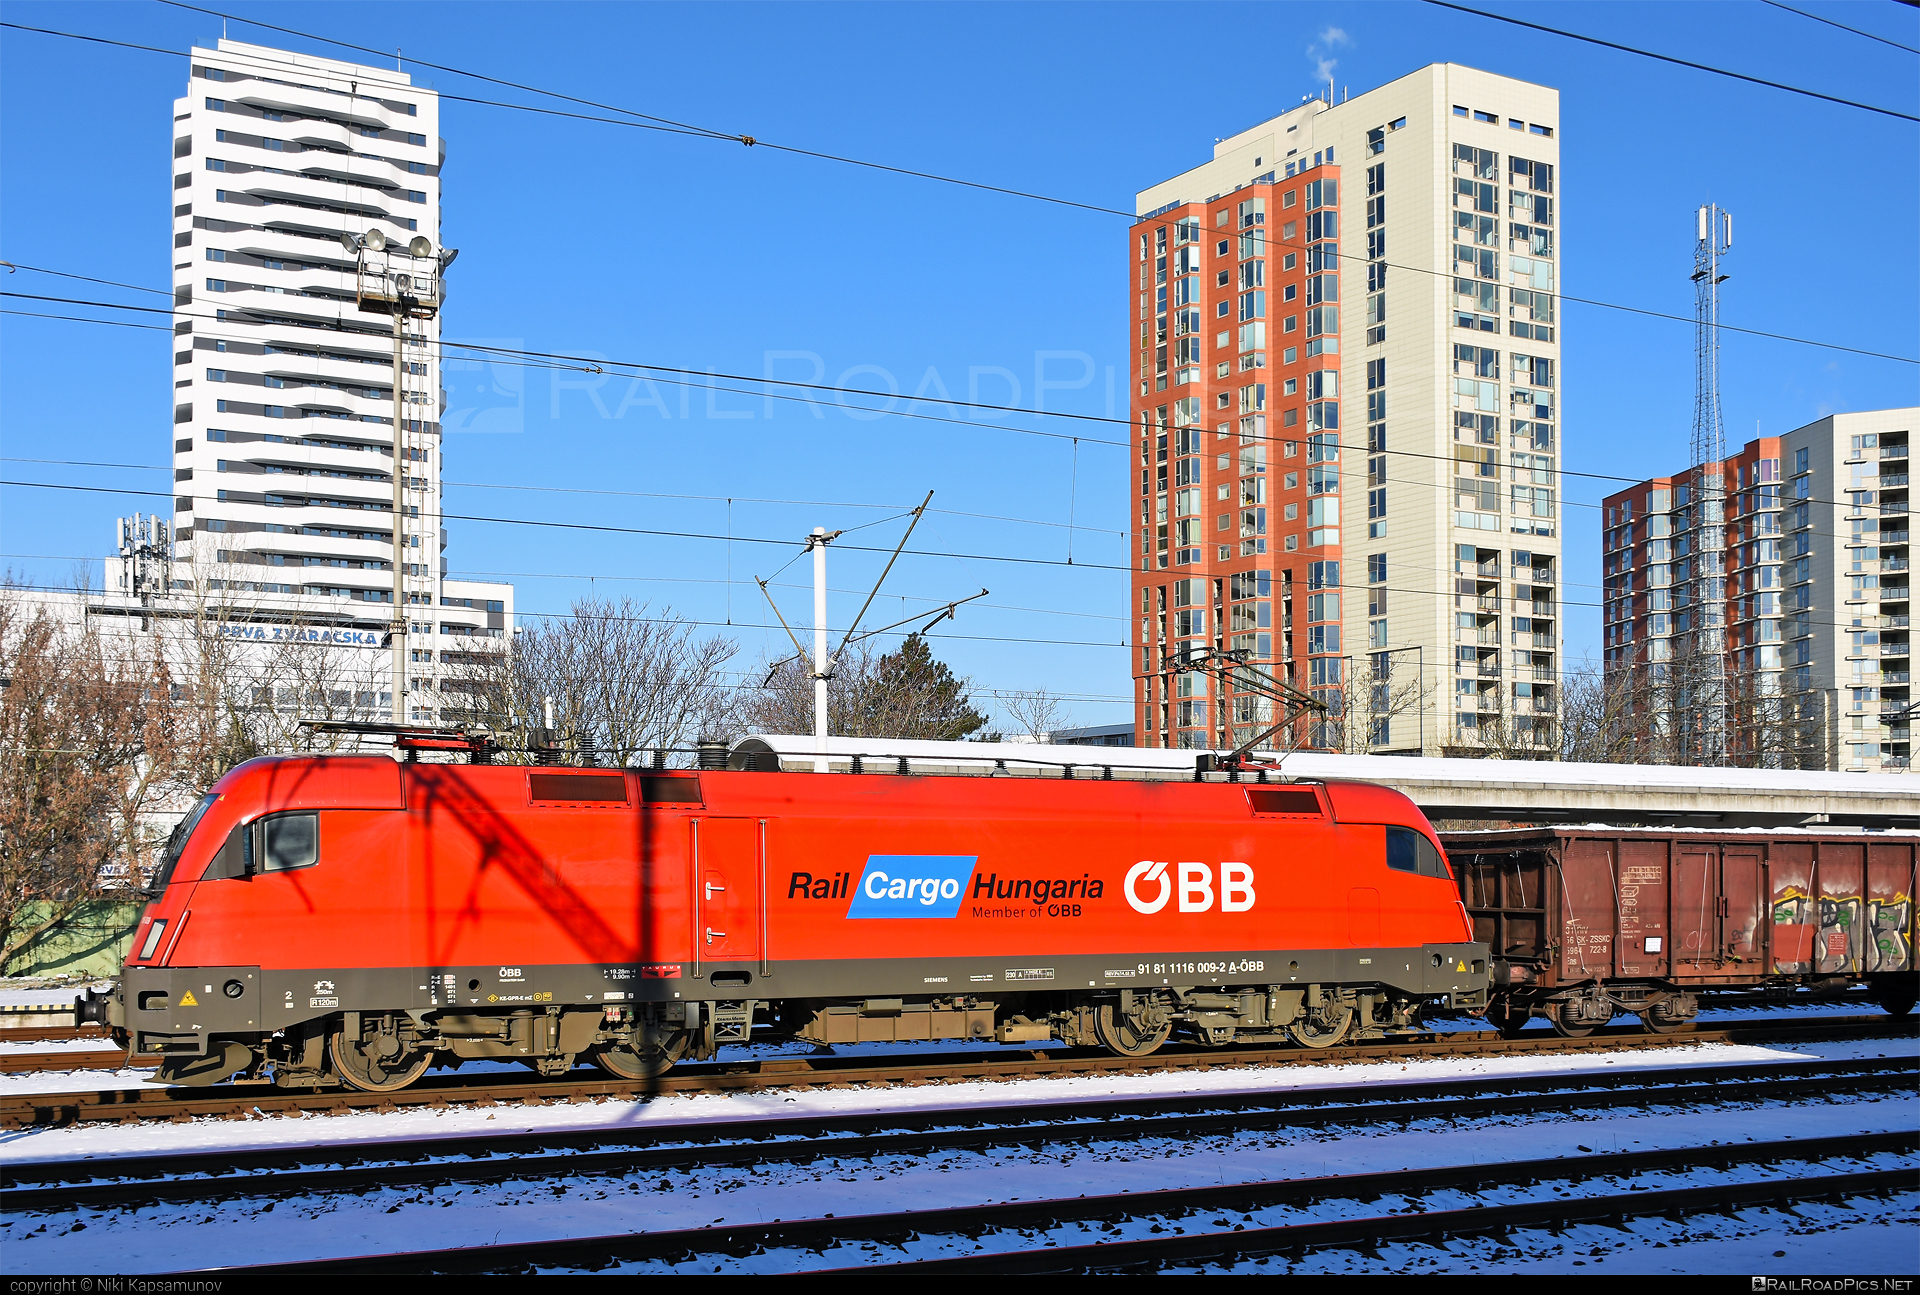 Siemens ES 64 U2 - 1116 009 operated by Rail Cargo Hungaria ZRt. #es64 #es64u2 #eurosprinter #graffiti #obb #openwagon #osterreichischebundesbahnen #rch #siemens #siemenses64 #siemenses64u2 #siemenstaurus #taurus #tauruslocomotive